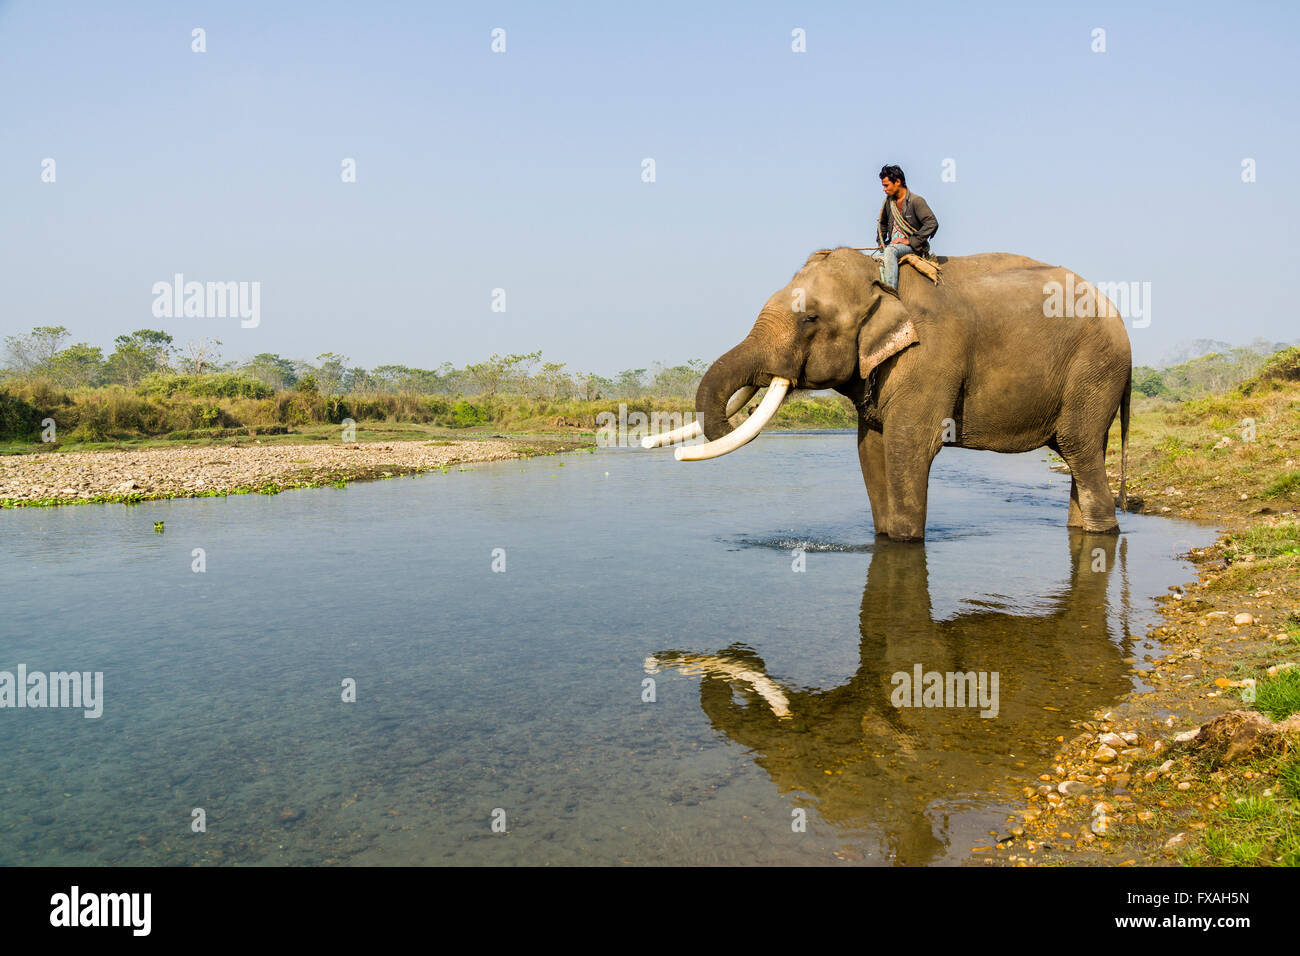 Addomesticazione maschio di elefante asiatico (Elephas maximus) con grandi zanne bianco, bevendo al fiume, Sauraha, Chitwan, Nepal Foto Stock